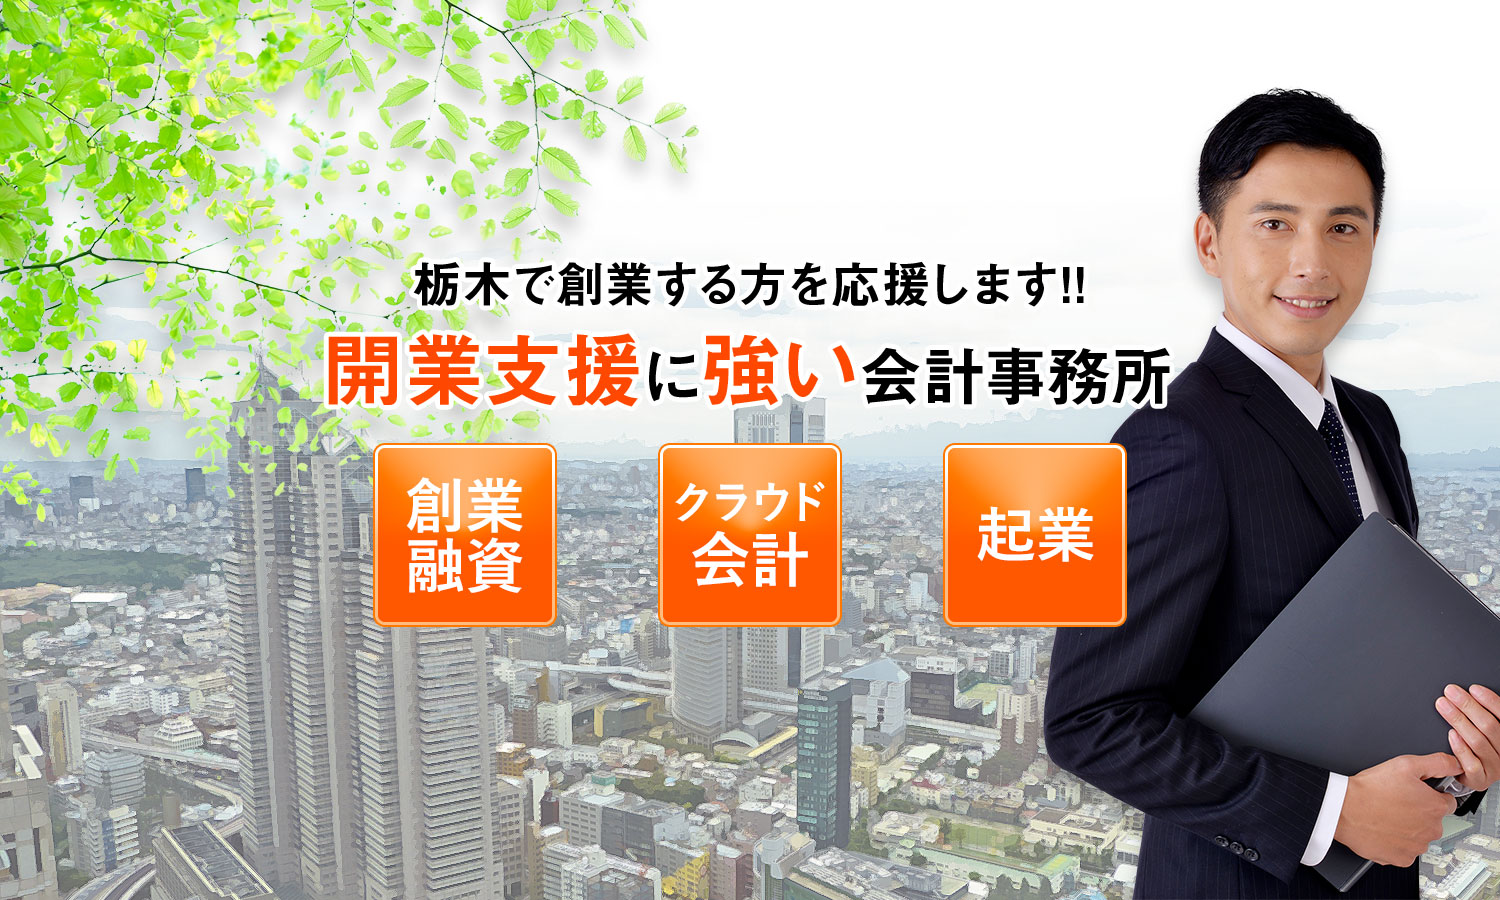 栃木で創業する方を応援します | 開業支援に強い会計事務所